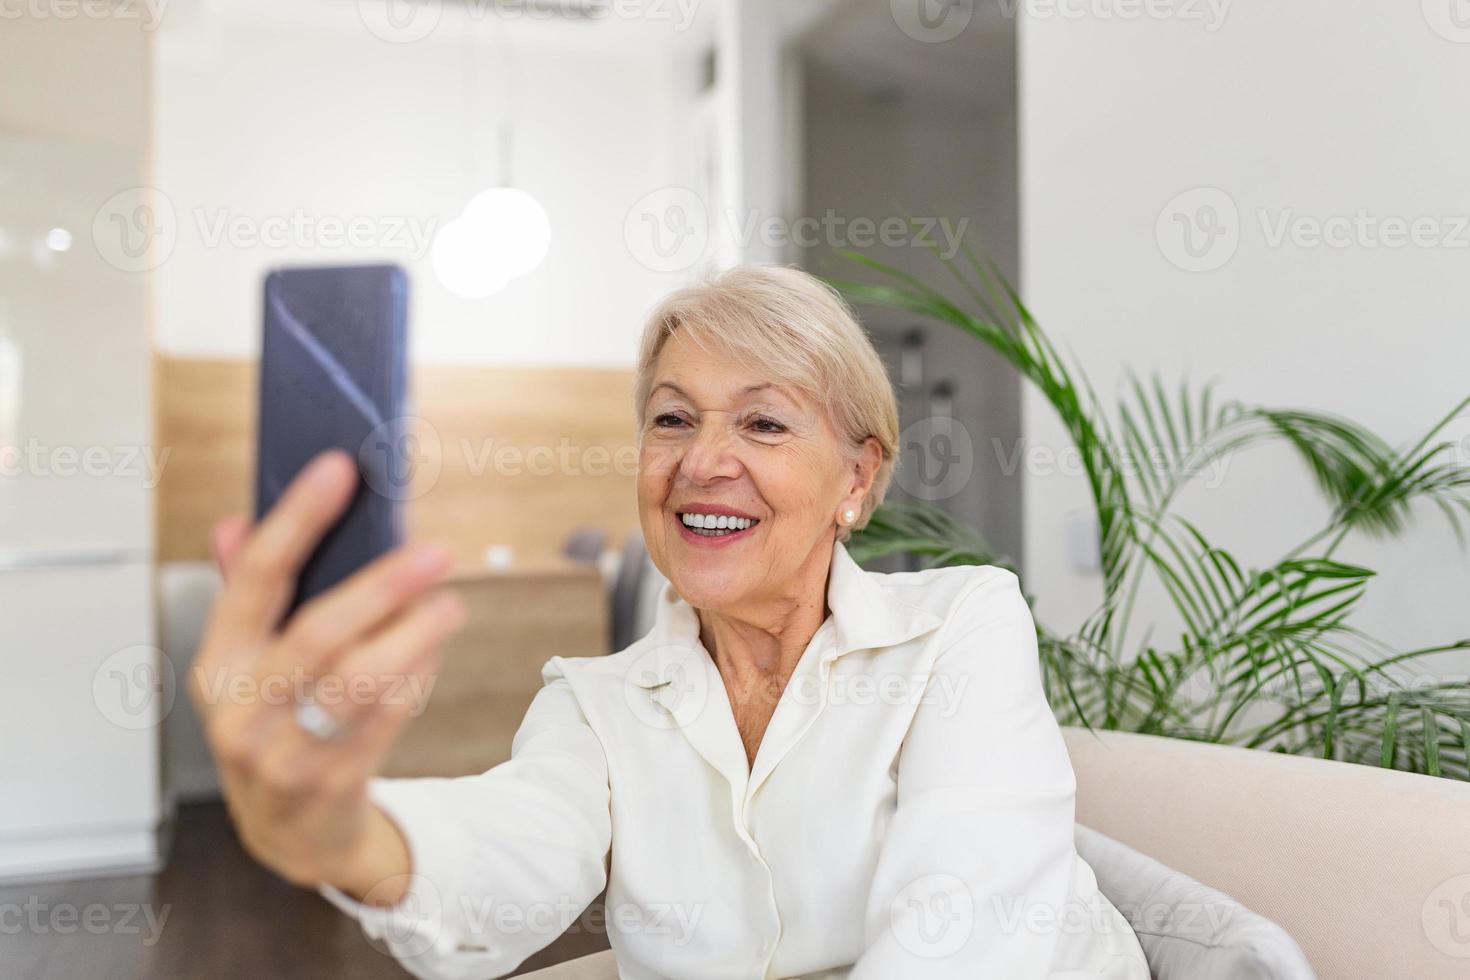 nonna assunzione selfie a casa nel il soggiorno. vicino su ritratto di contento allegro delizioso affascinante bellissimo anziano signora nonna nonna assunzione un' autoscatto. vecchiaia, la pensione e persone concetto foto